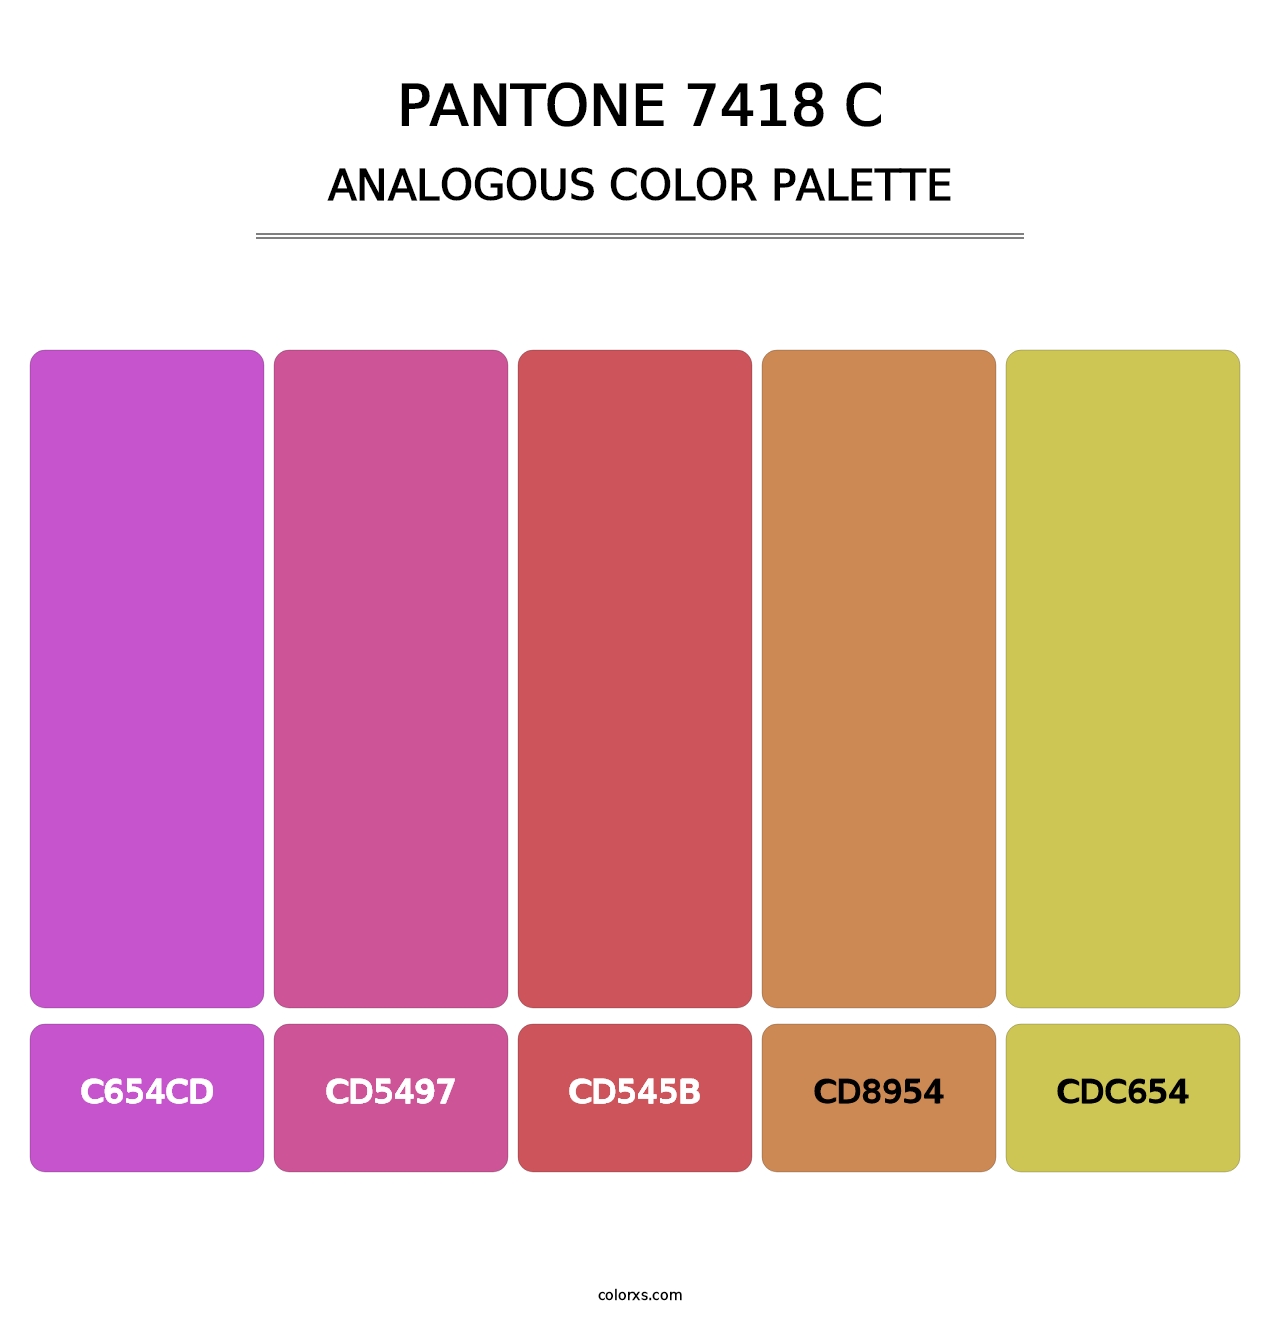 PANTONE 7418 C - Analogous Color Palette